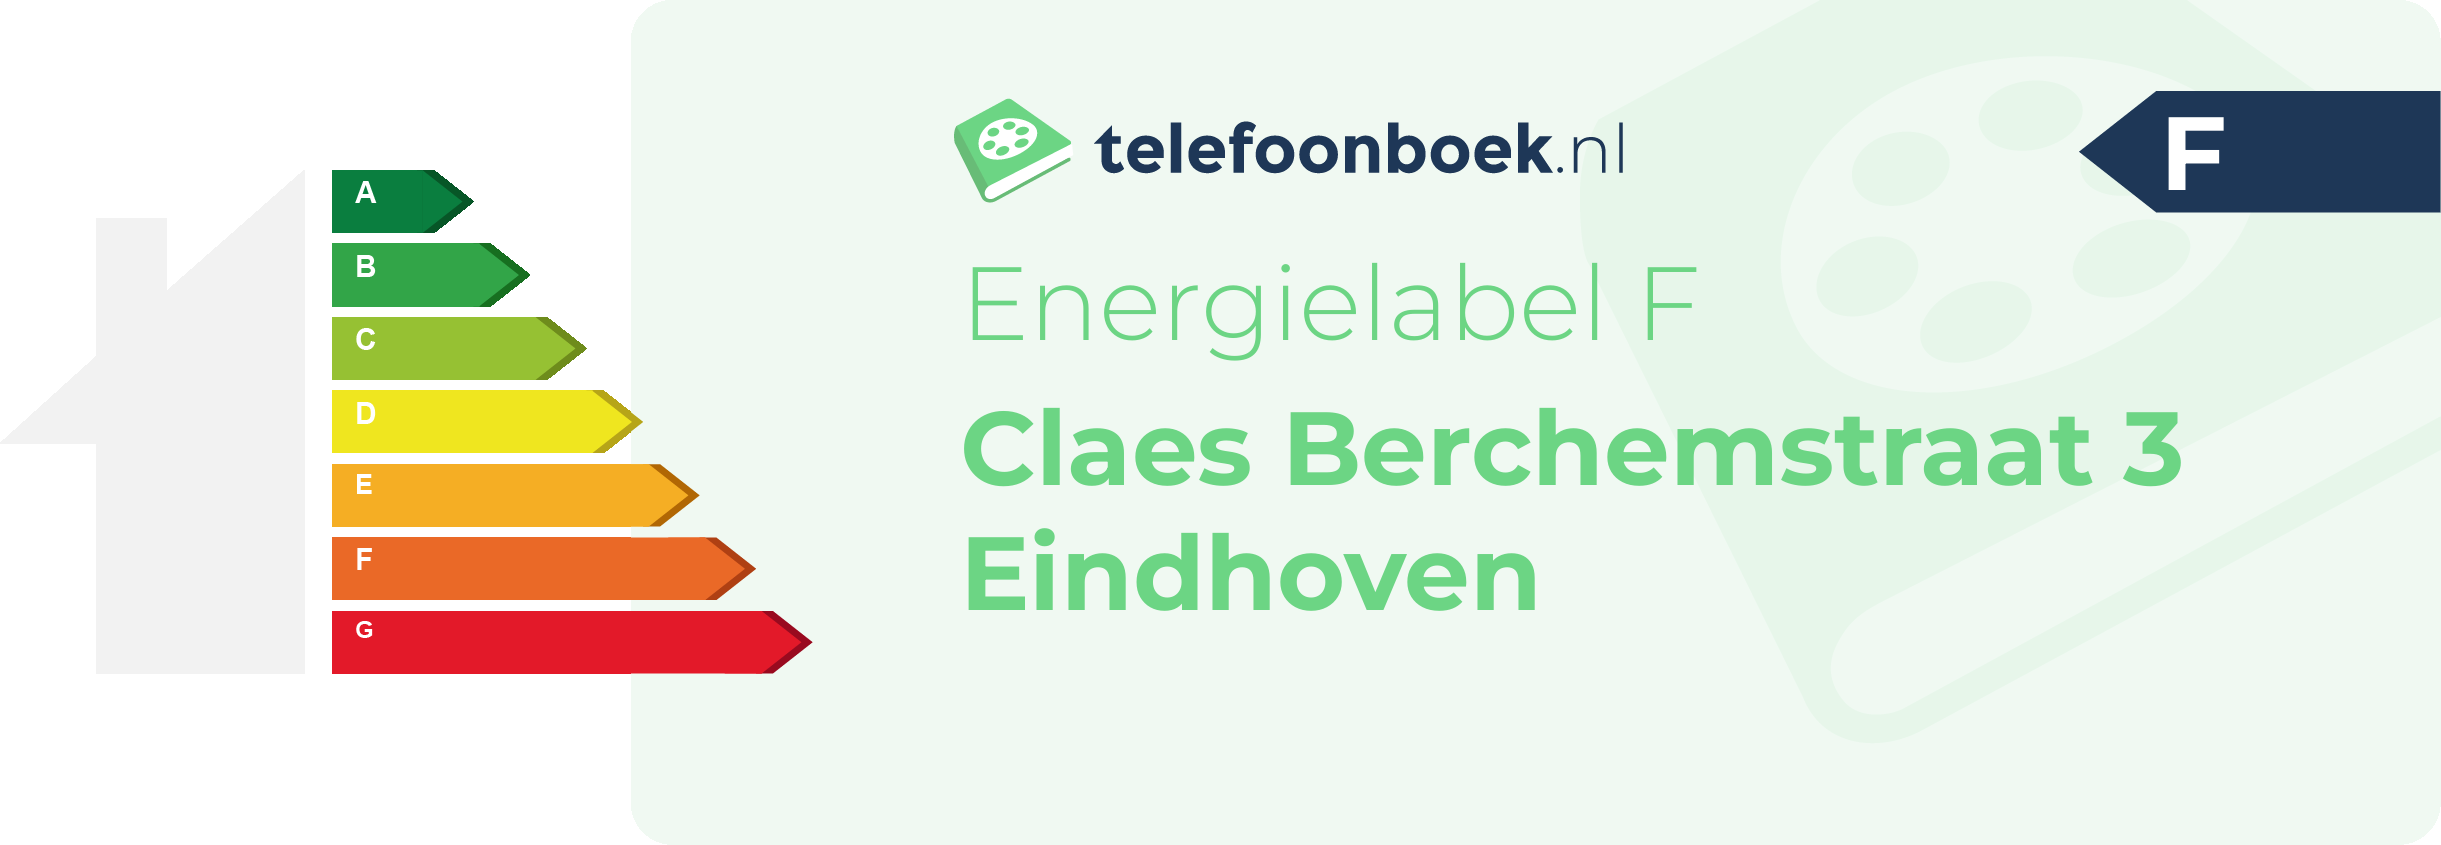 Energielabel Claes Berchemstraat 3 Eindhoven